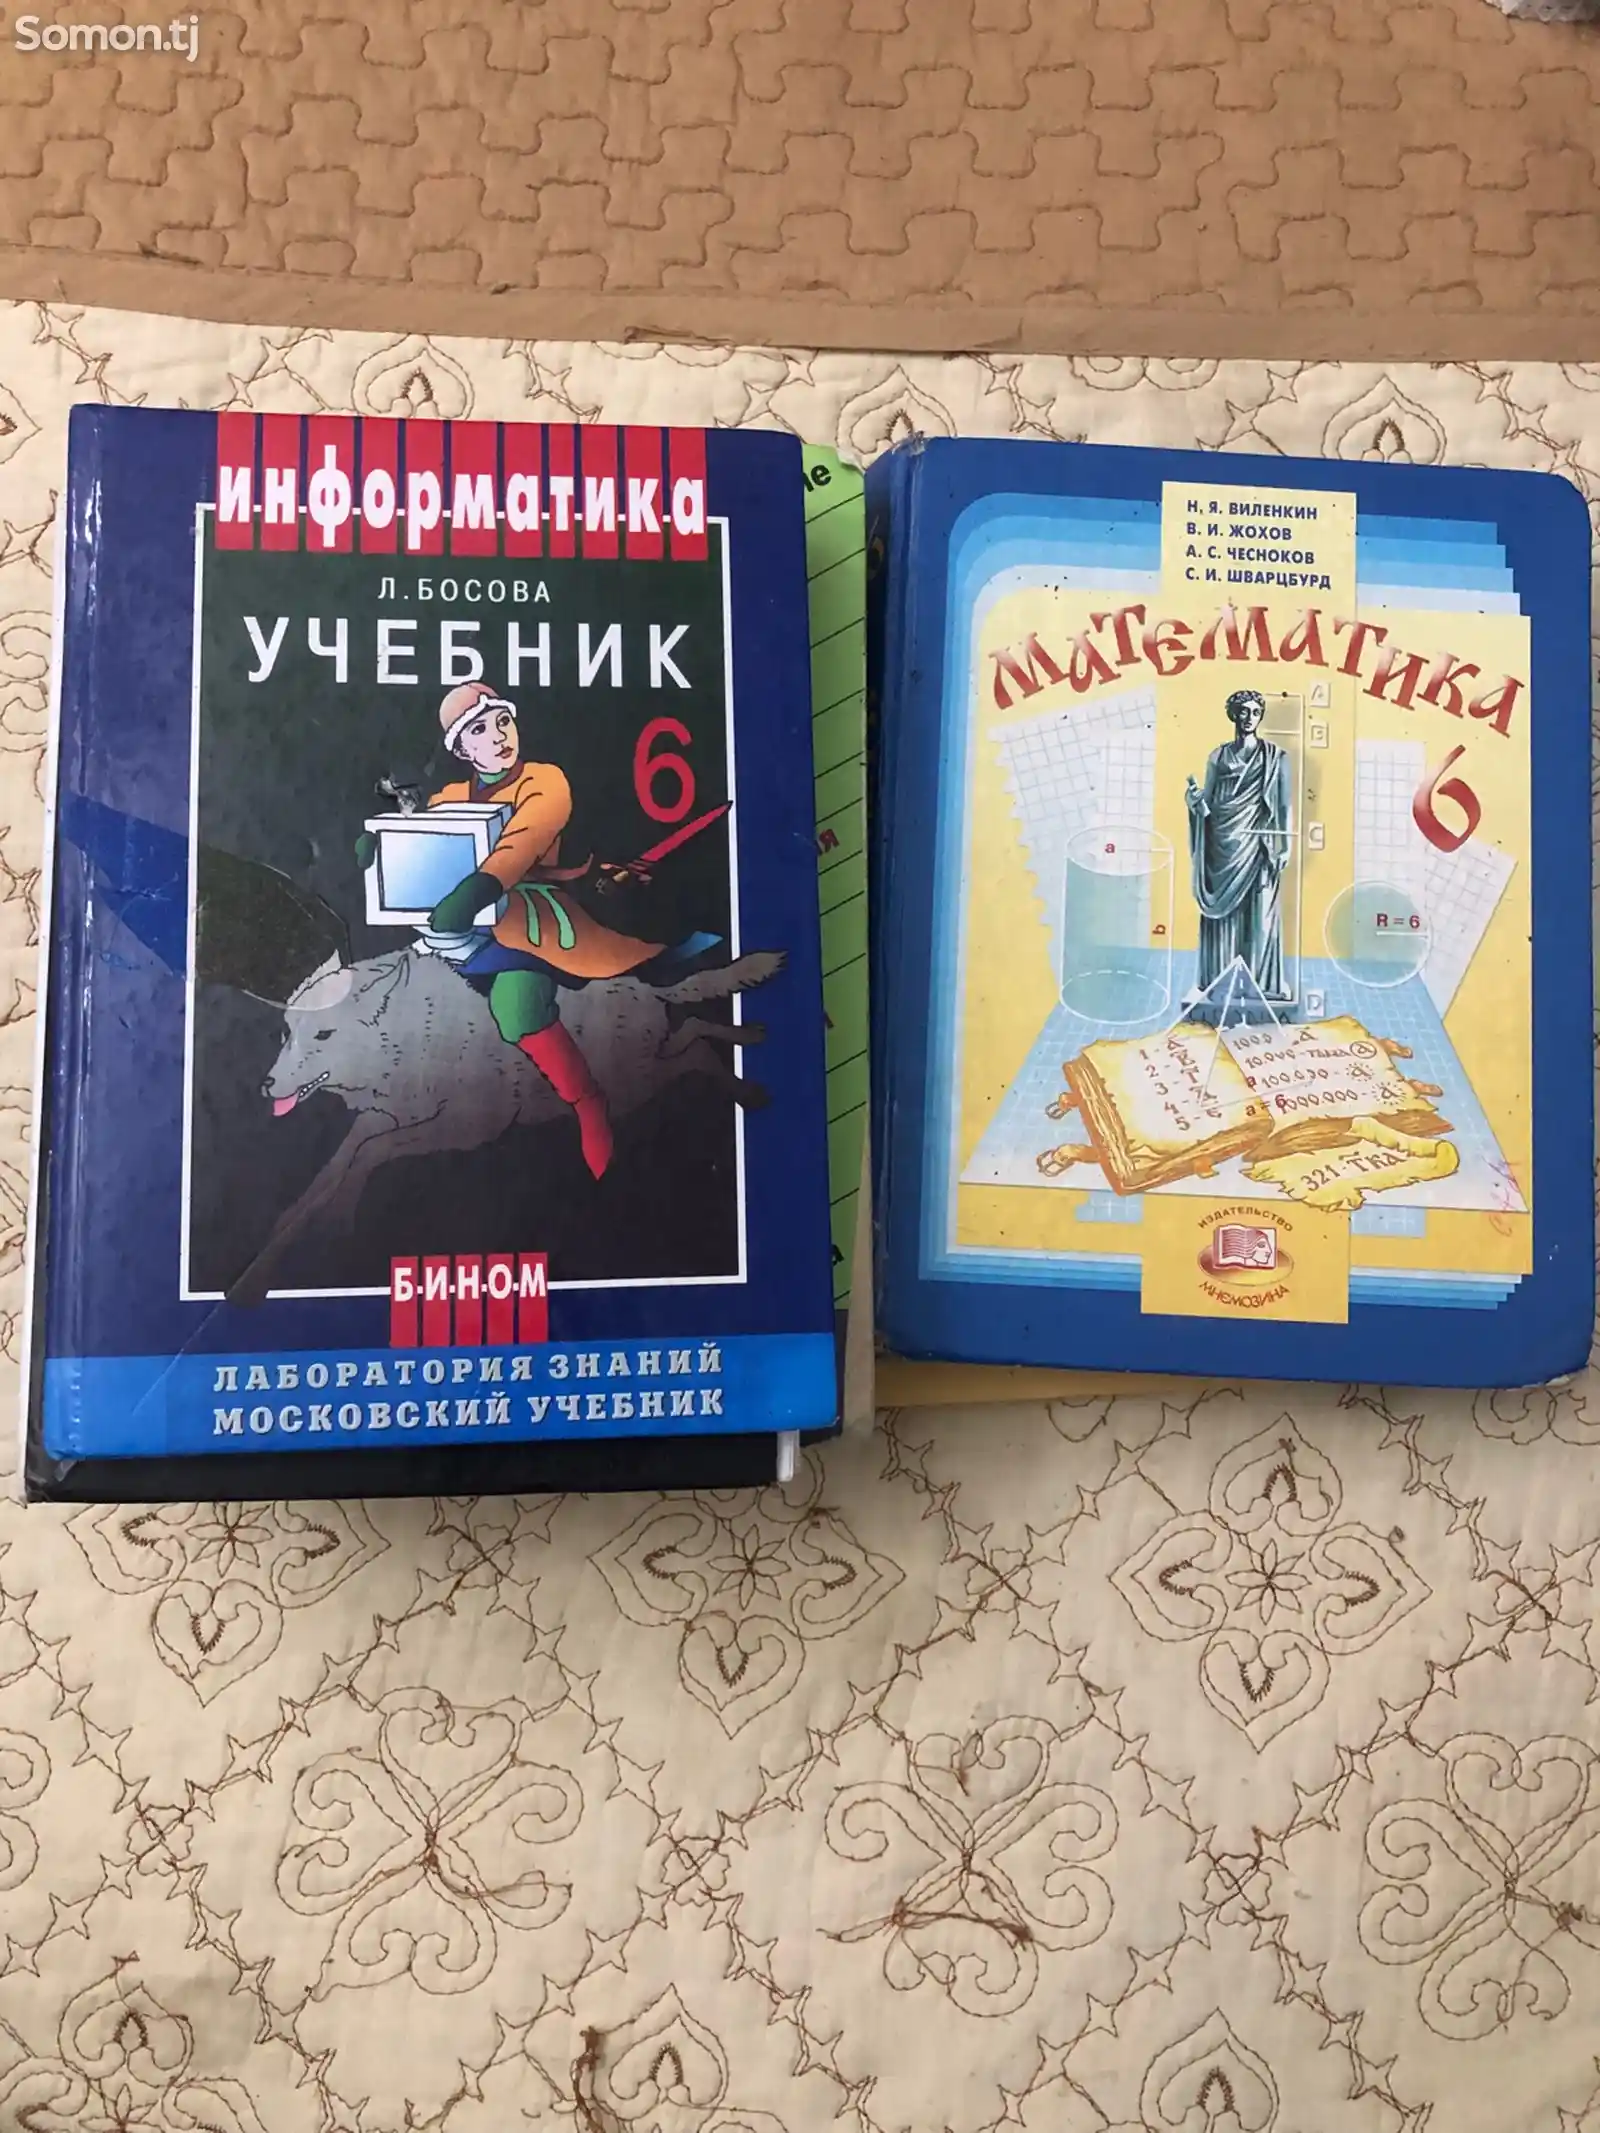 Школьные книги 6 класса для русской школы